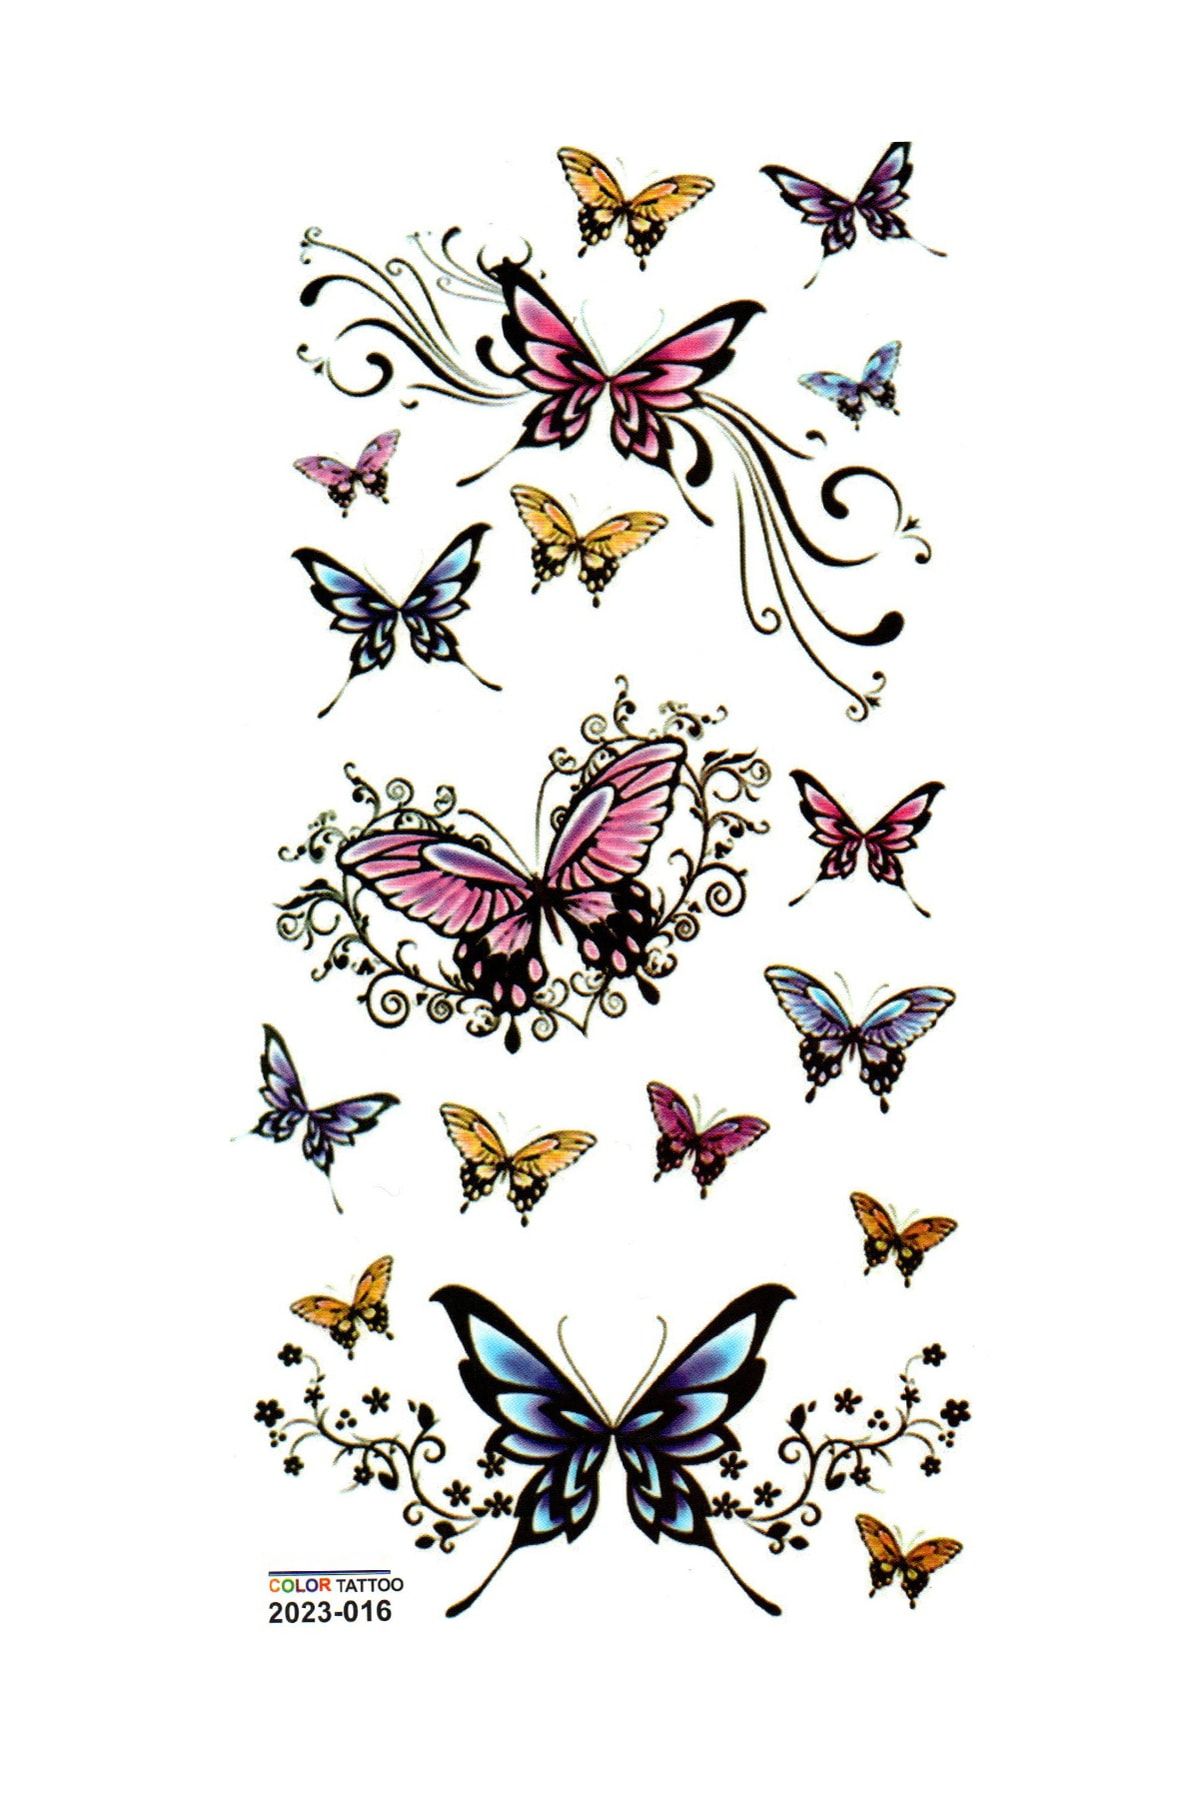 Limmy Tattoo Geçici Dövme Vücut Dövmesi 9x19 cm Renkli016  Renkli Kelebekler